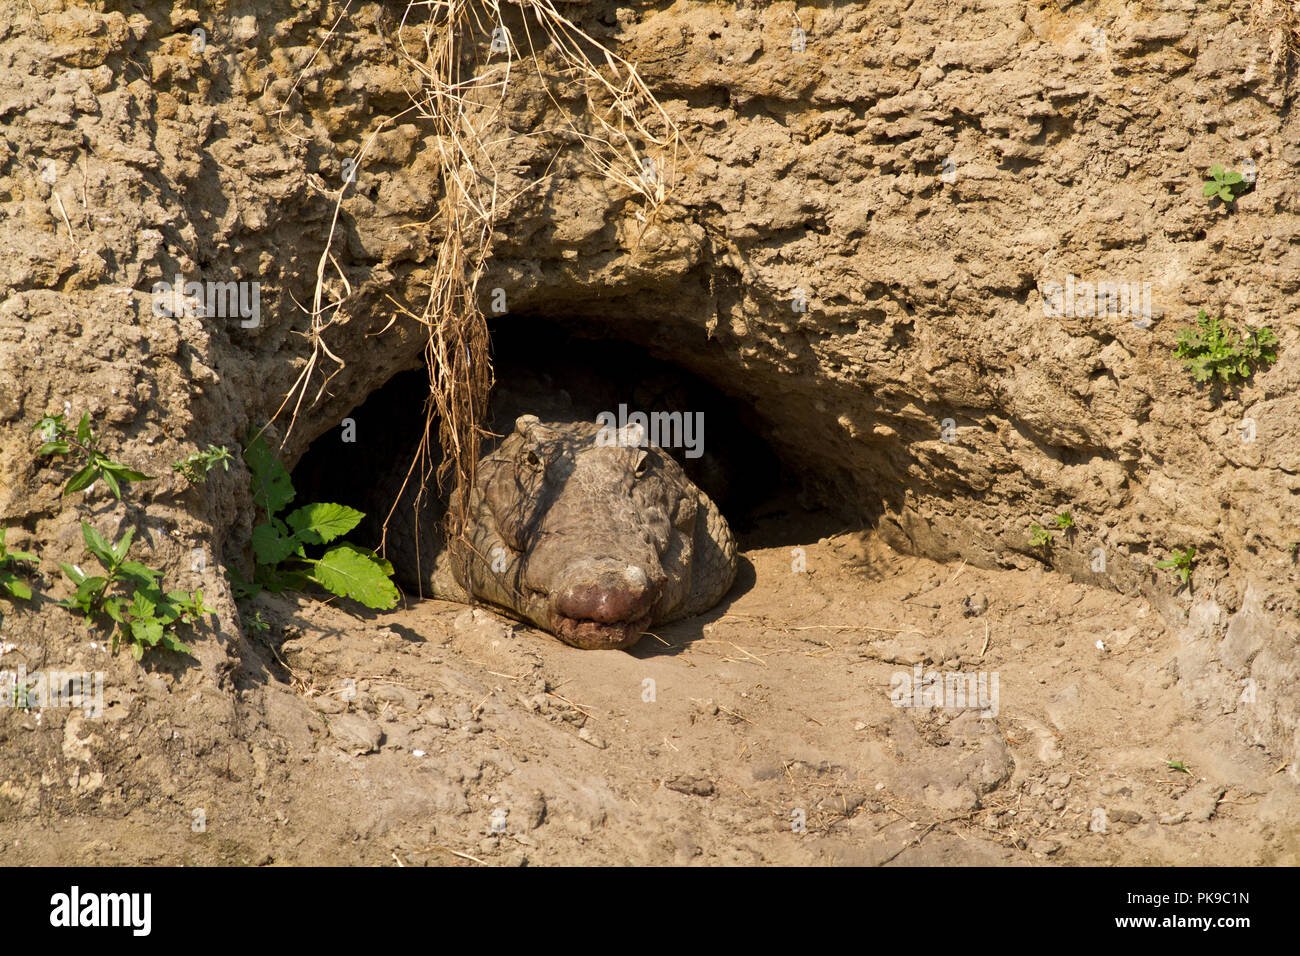 Ein großes Krokodil sucht Zuflucht in der Sonne an einem kühlen, feuchten Höhle in den sandigen Ufern der Katuma Fluss gegraben hat. Diese Höhlen sind häufig verwendet Stockfoto